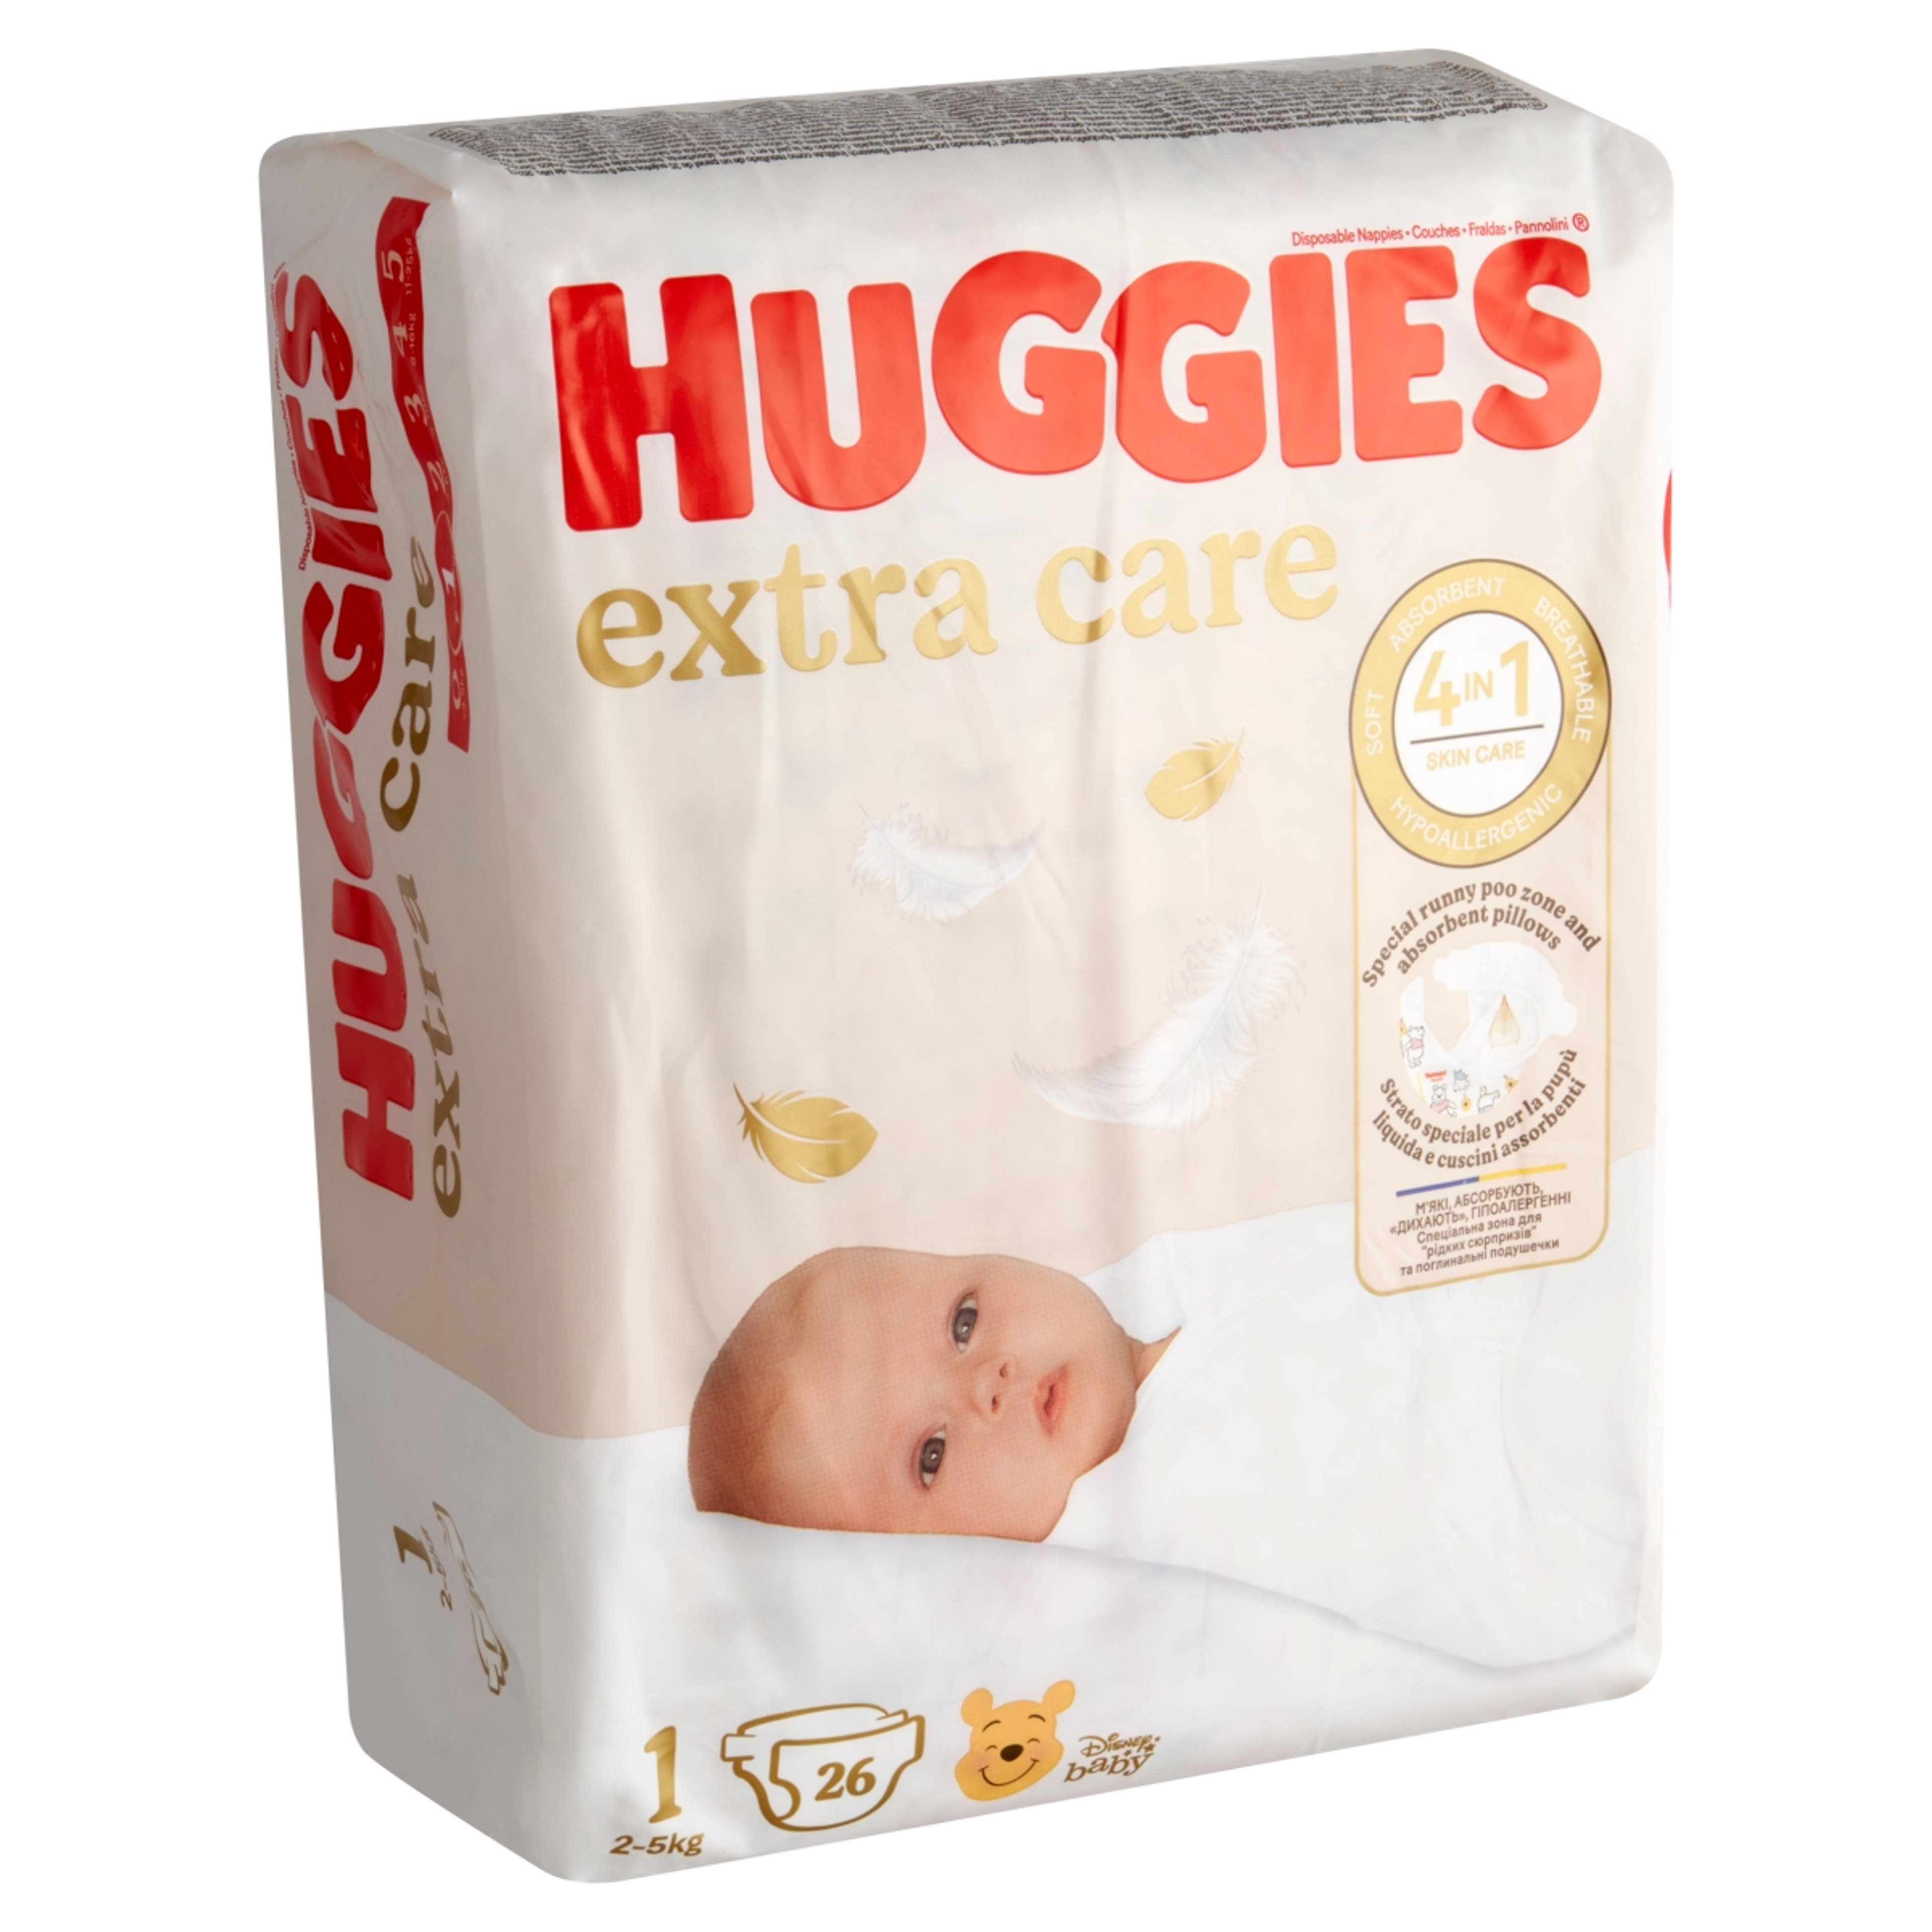 Huggies Extra Care 1 3-5 kg pelenka újszülött csecsemők számára - 26 db-2